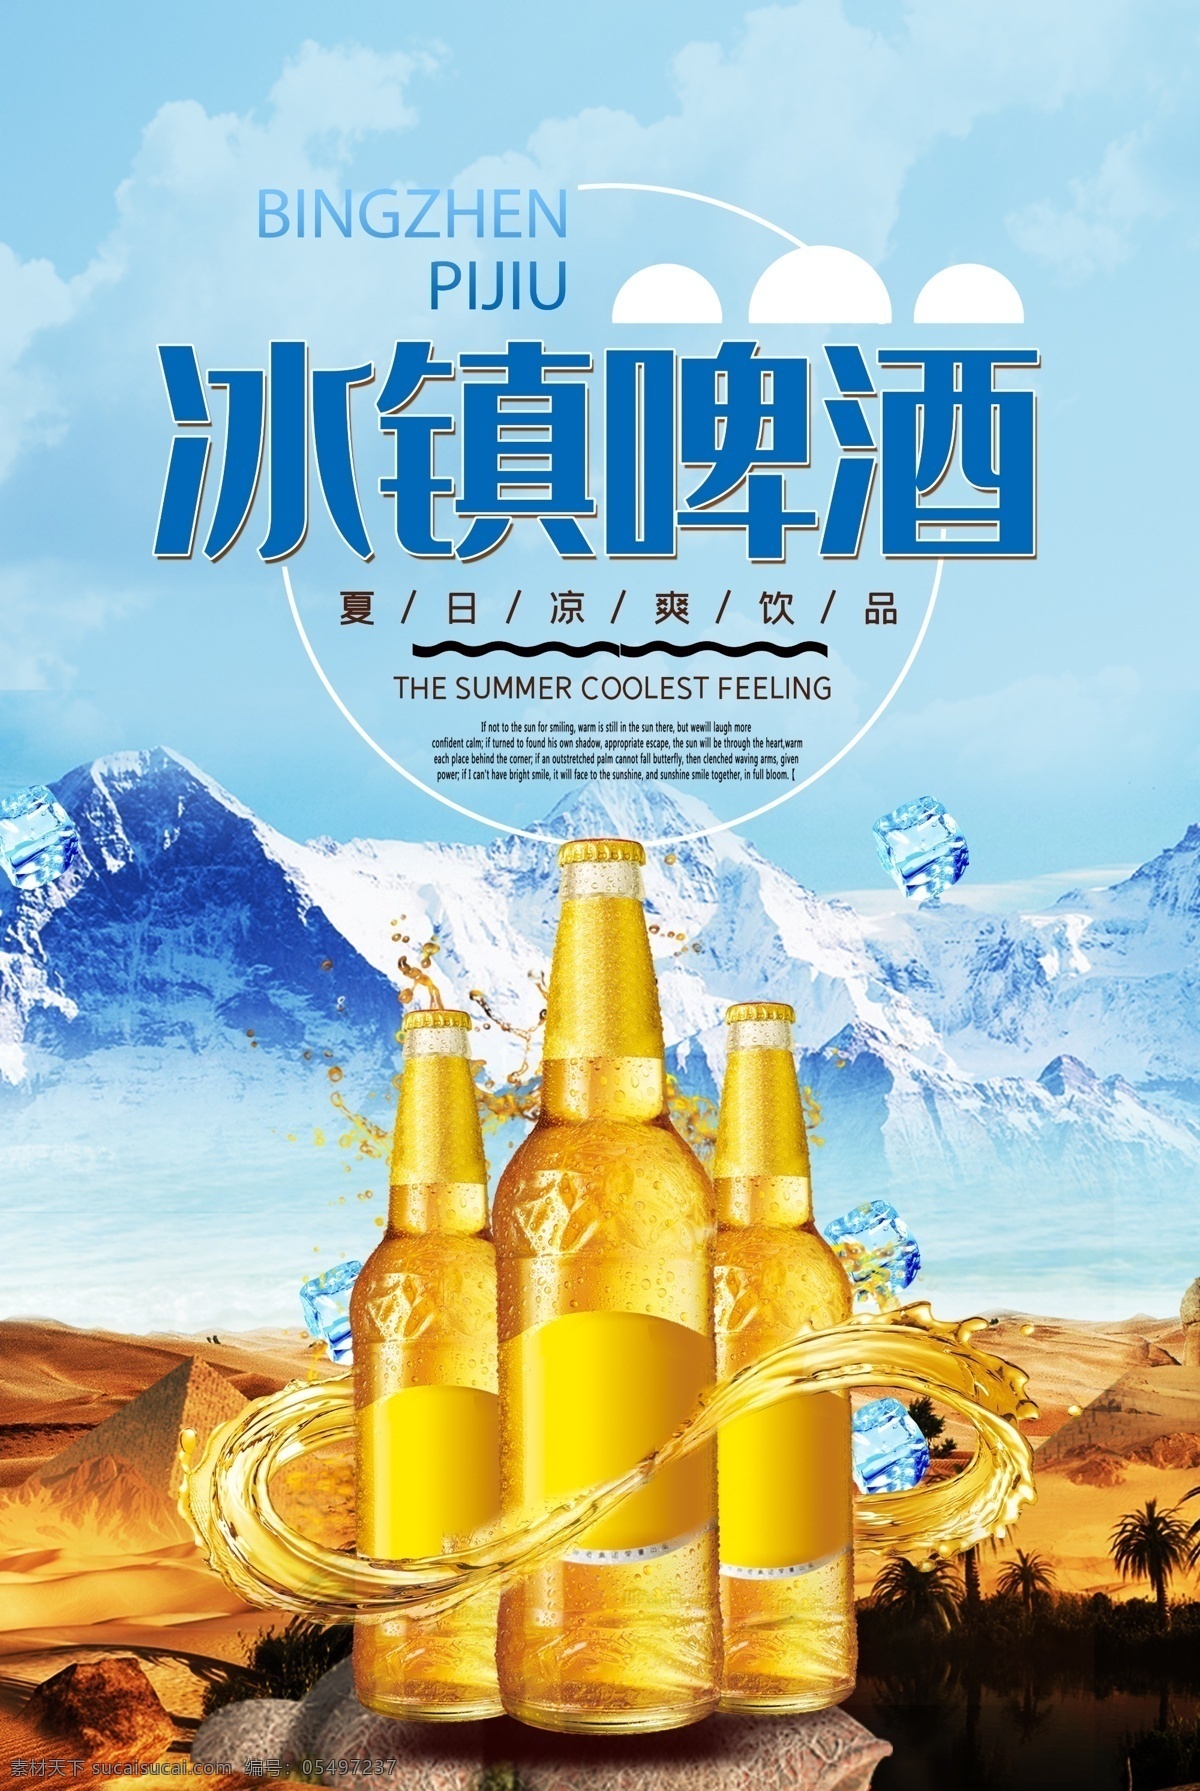 啤酒节广告 啤酒宣传海报 啤酒节海报 冰镇啤酒广告 啤酒海报图片 冷饮饮料海报